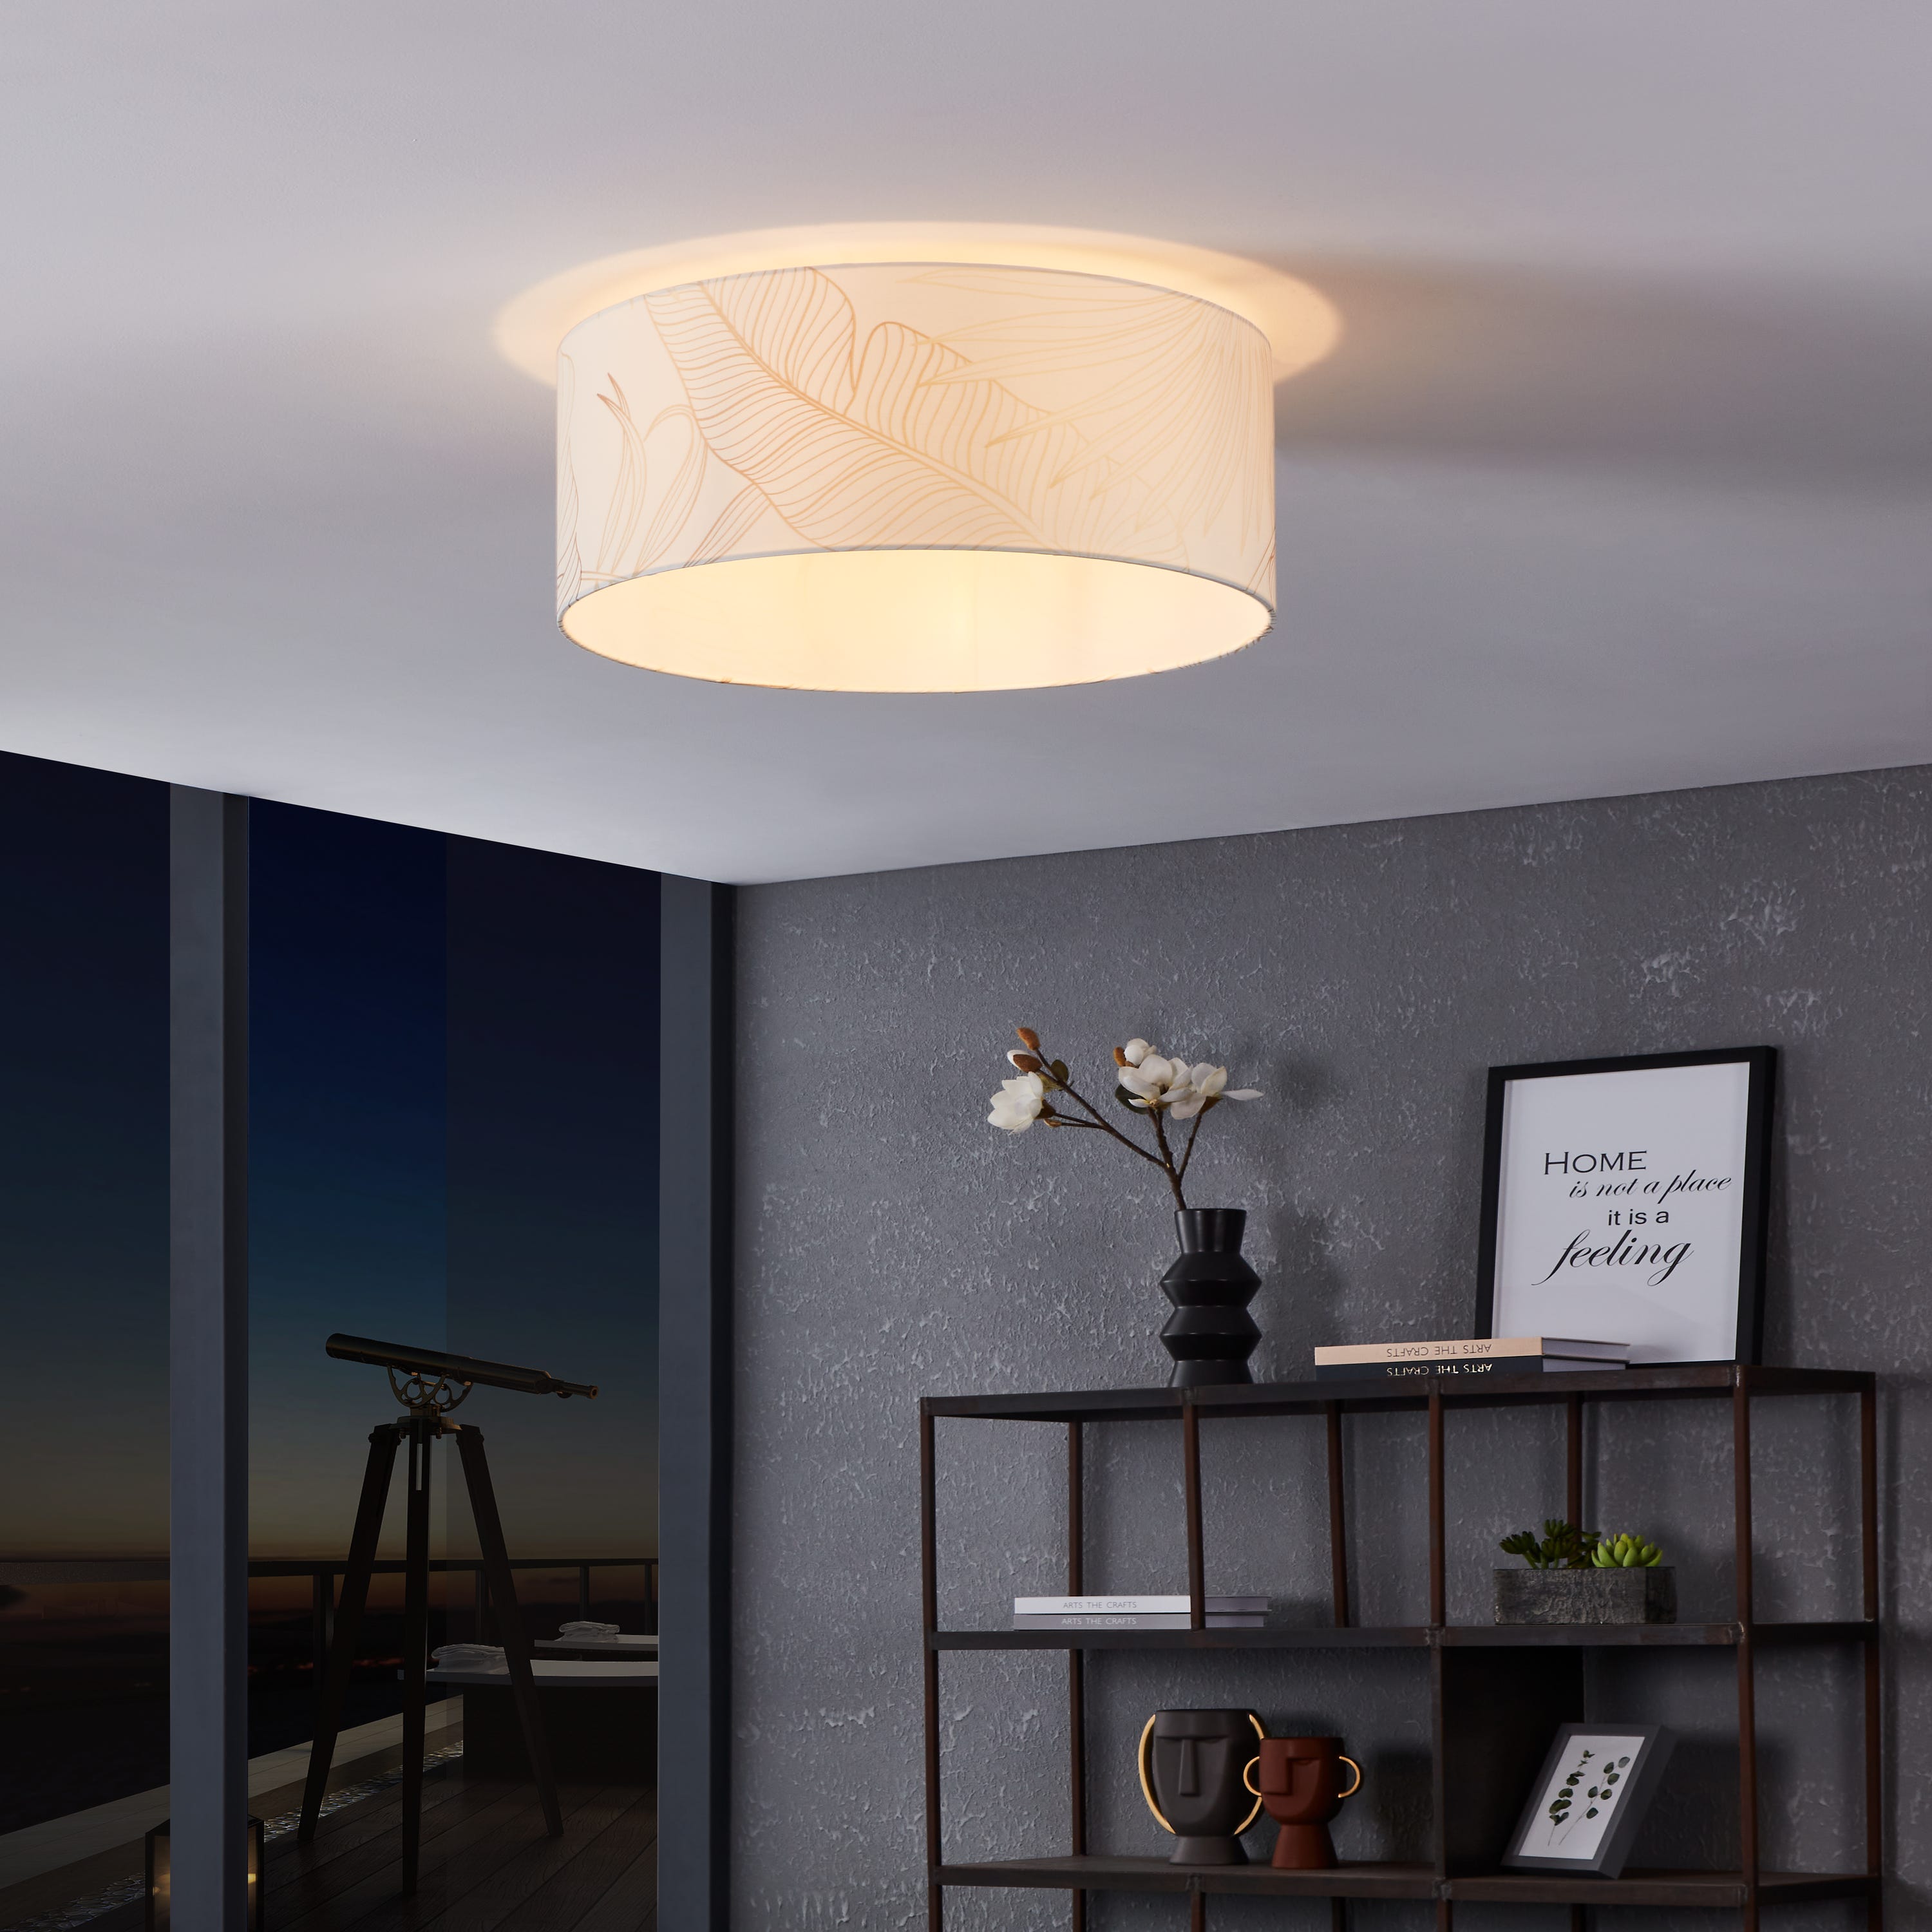 Moderna lámpara de techo LED 46W rendimiento 360W lámpara de techo